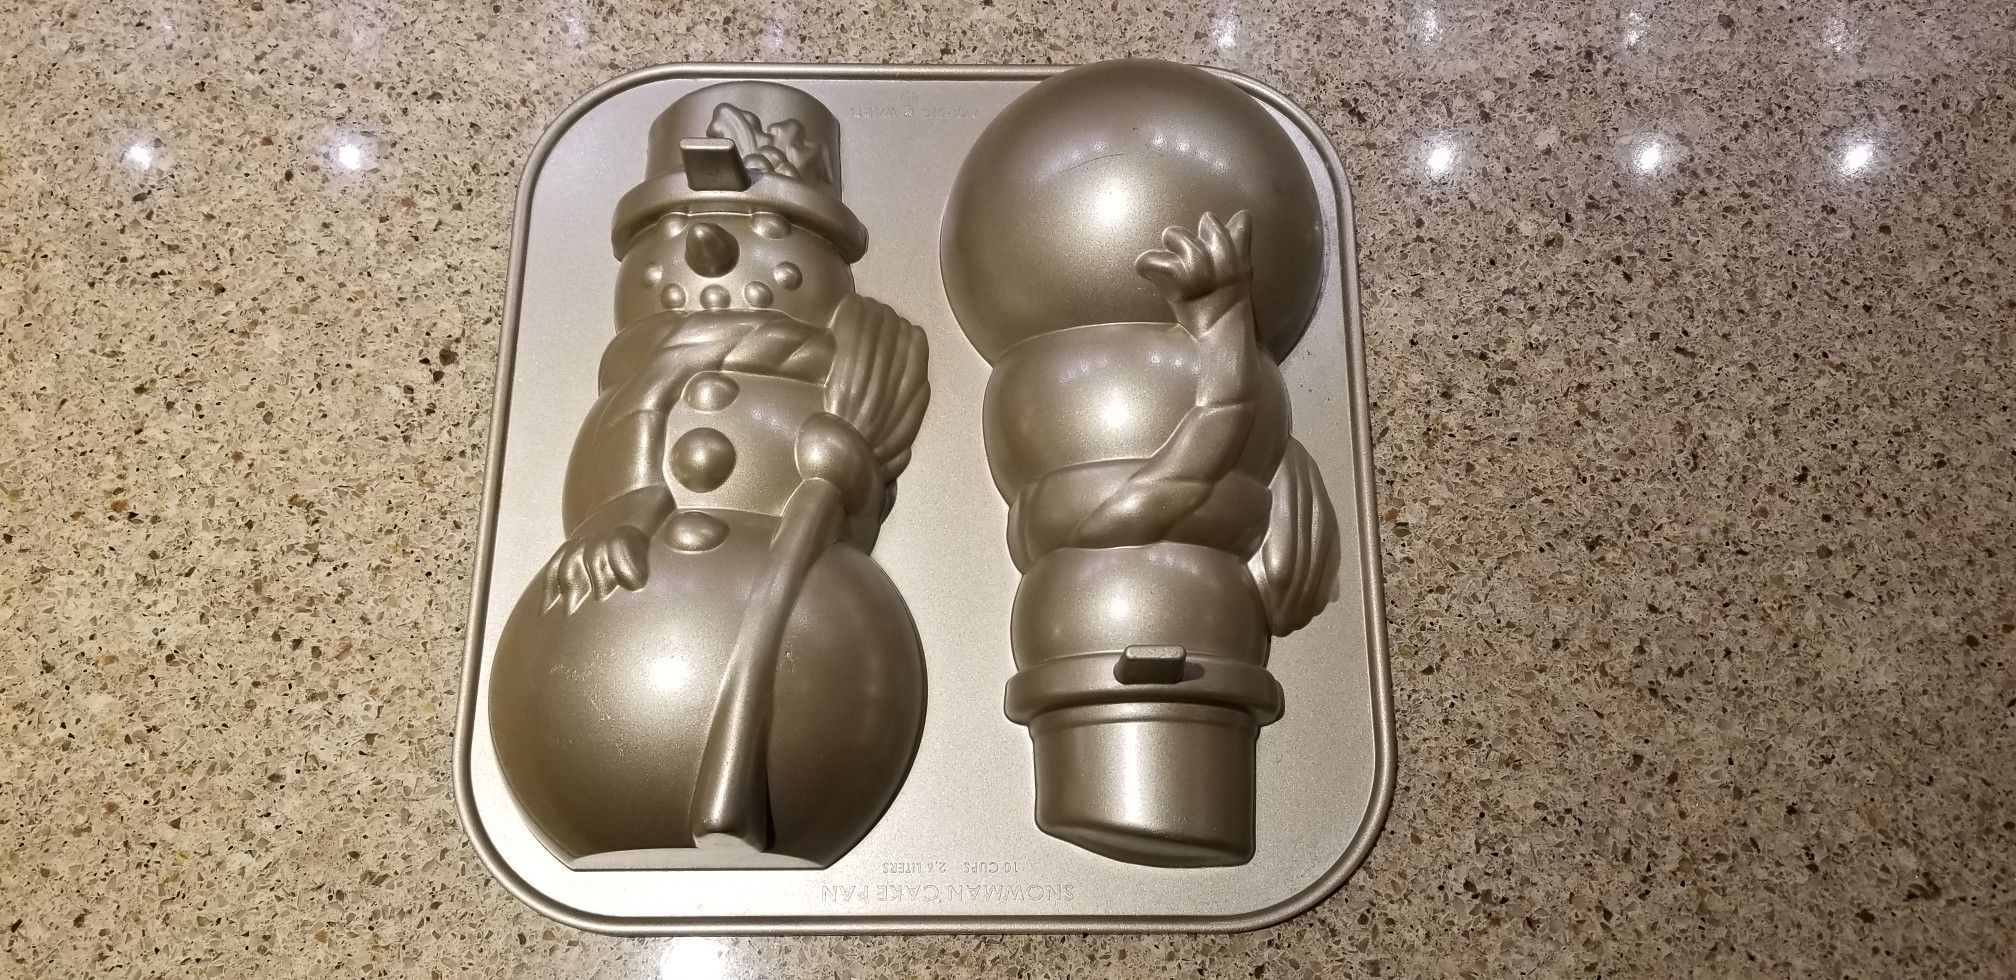 Snowman cake pan